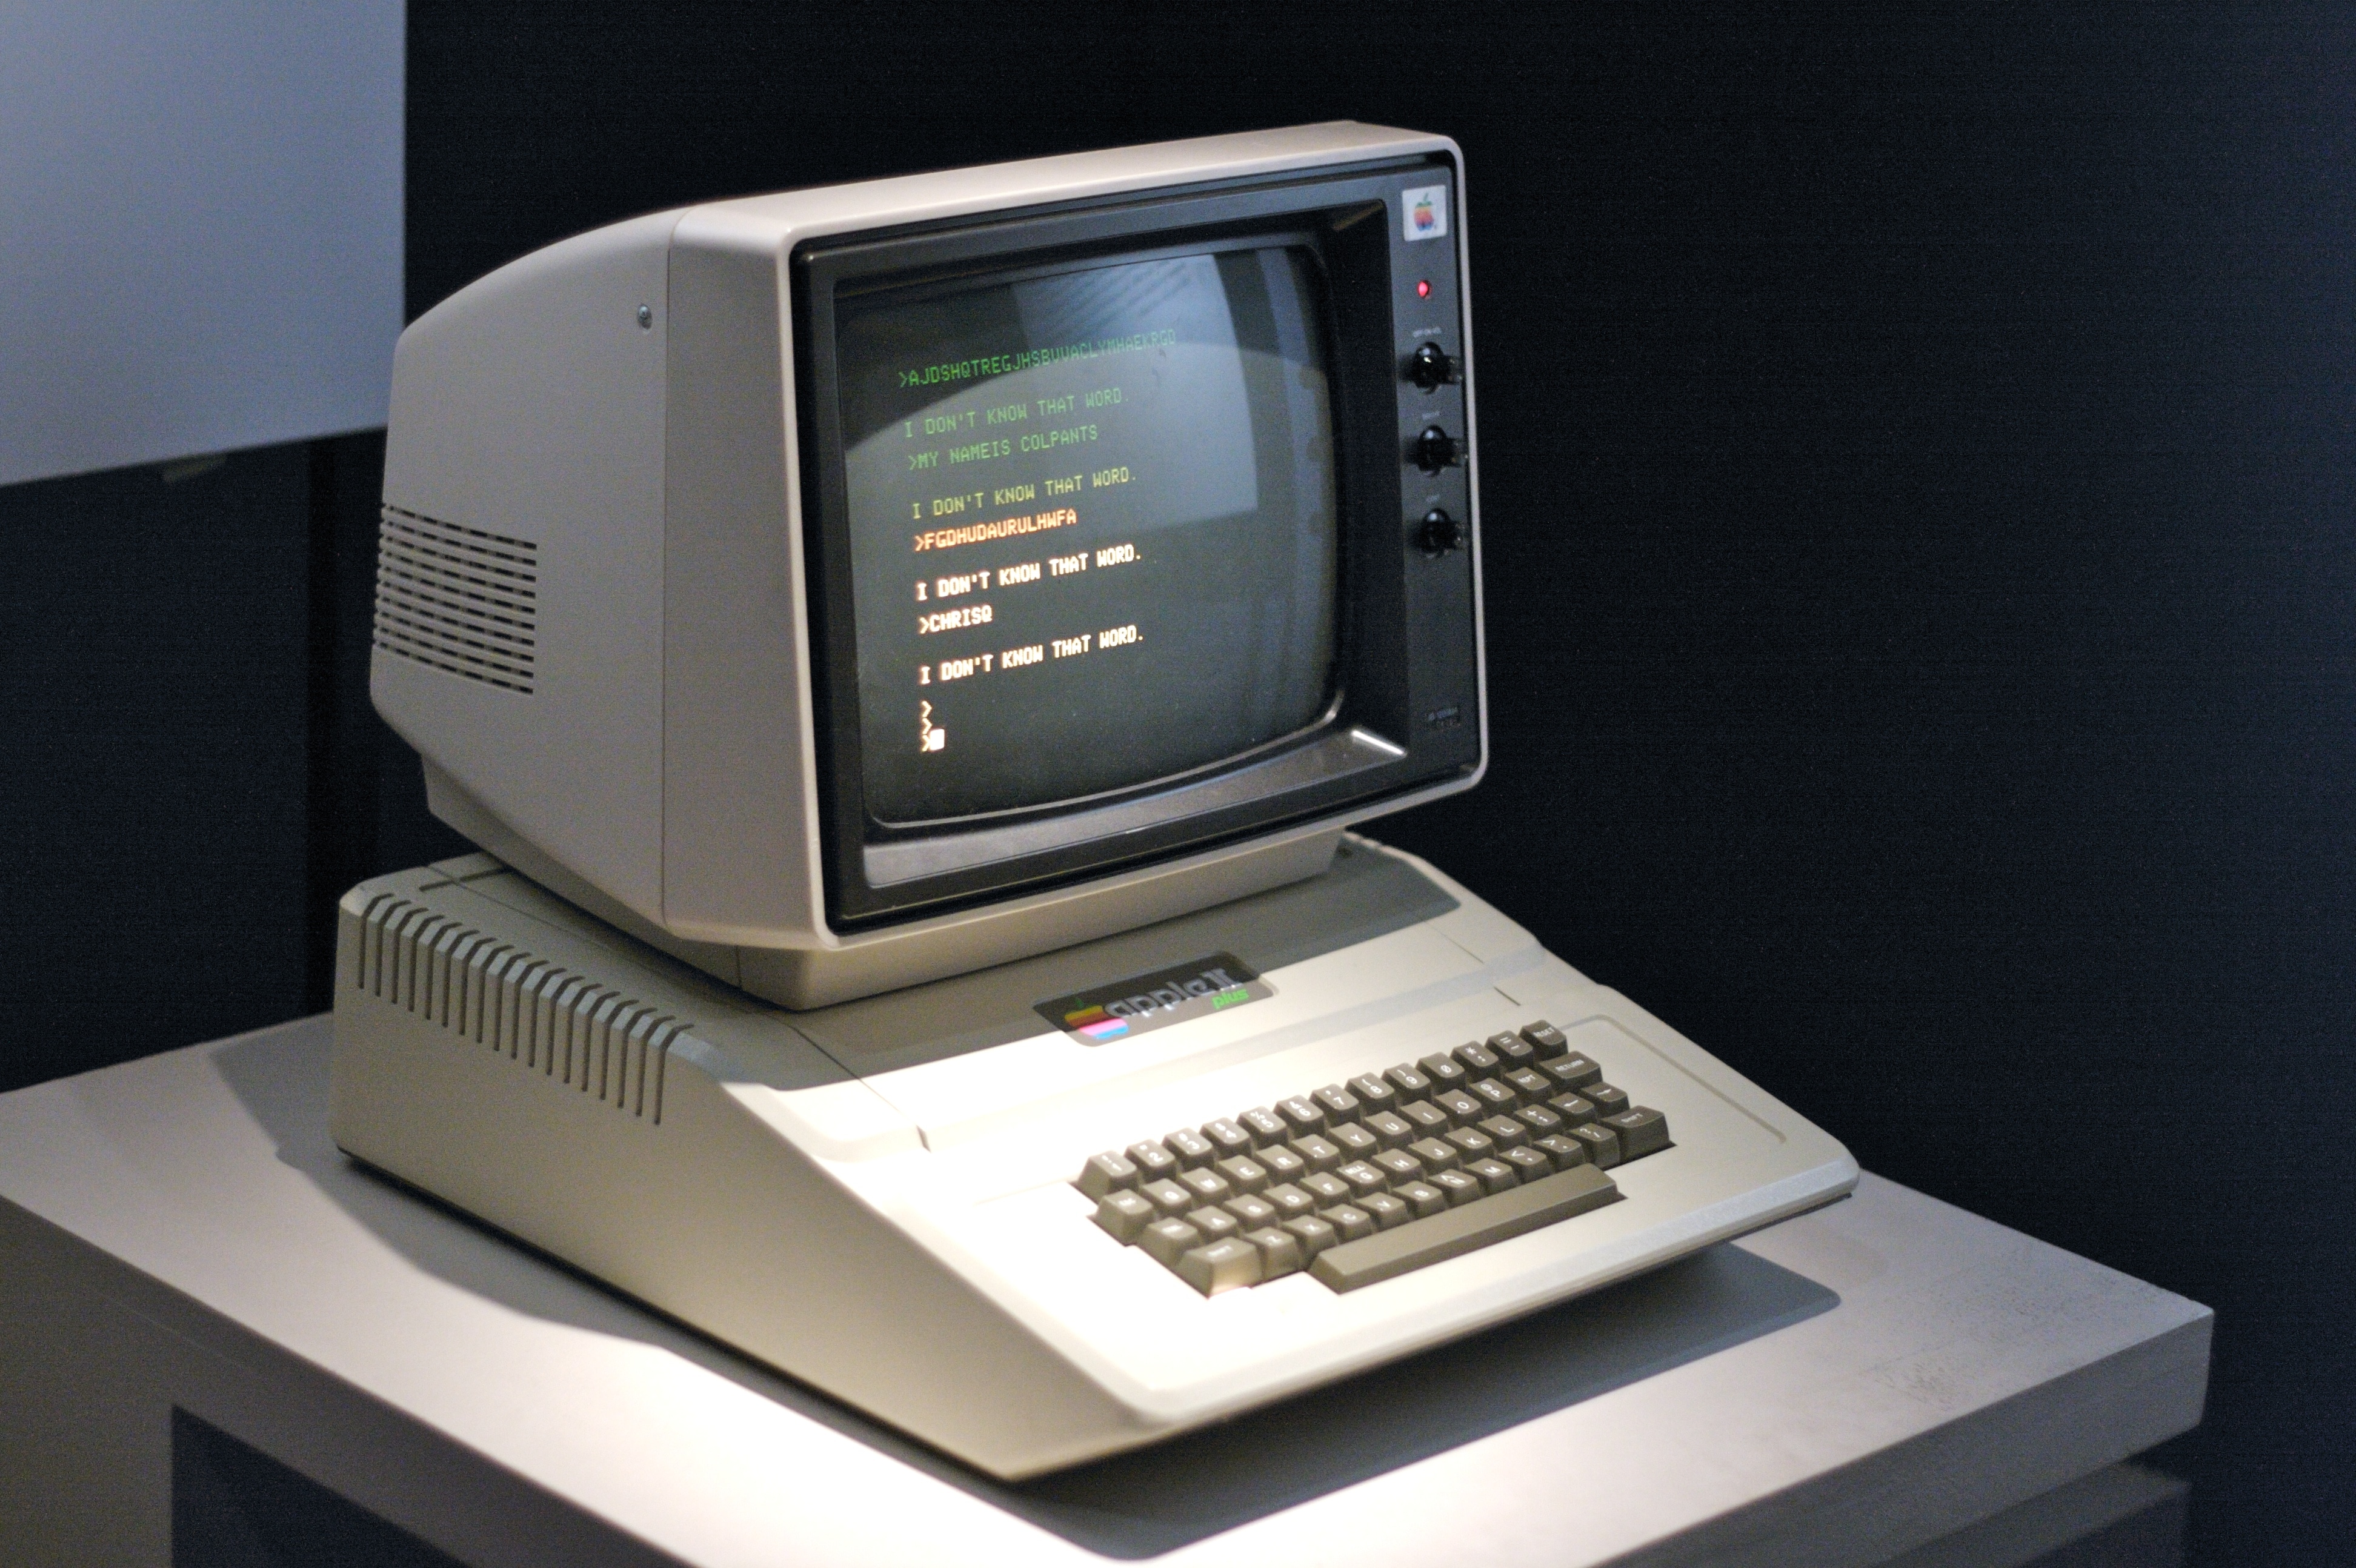 Apple se autodestruirá como en los años 80